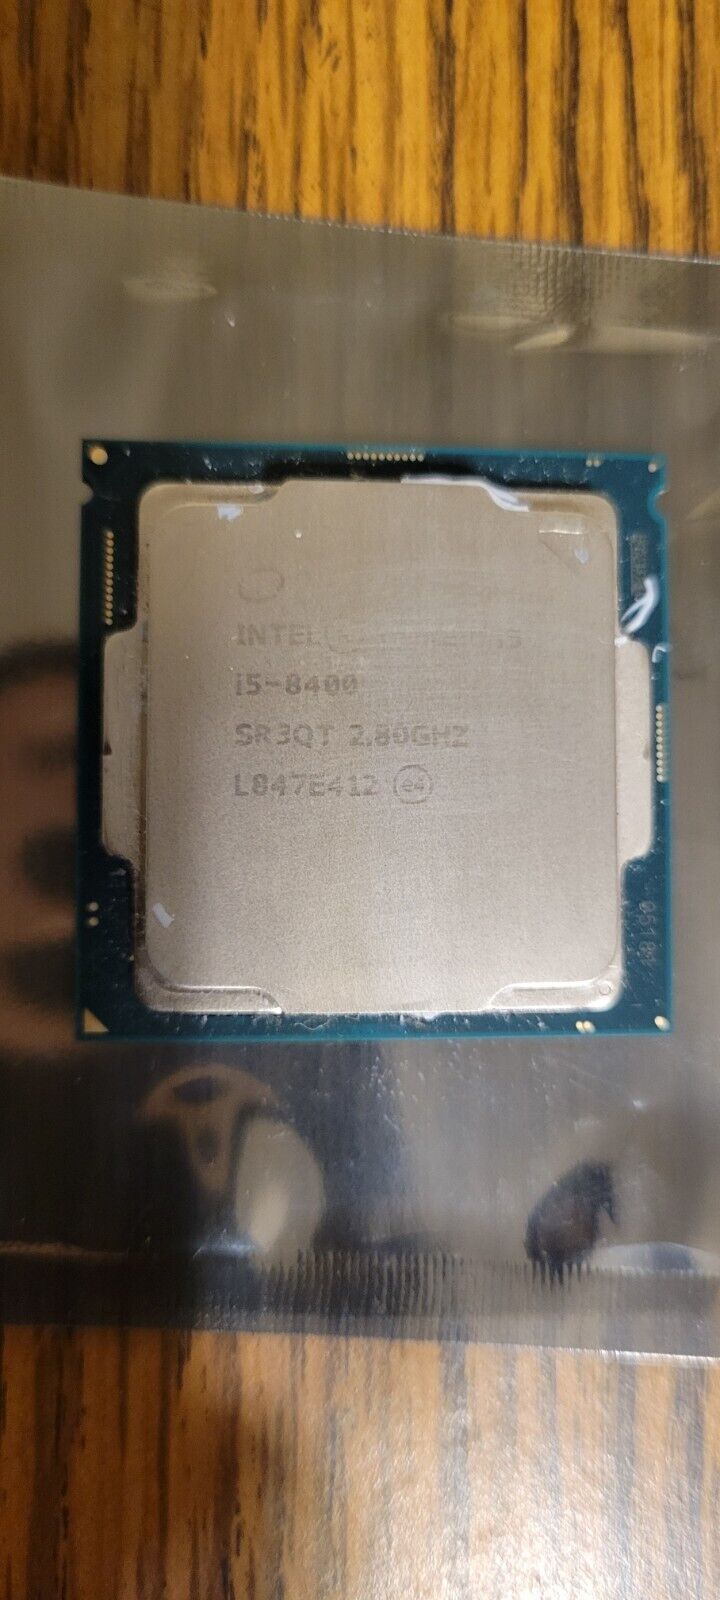 Intel Core i5-8400 SR3QT 2.80Ghz LGA 1151 6-Core Desktop CPU Processor